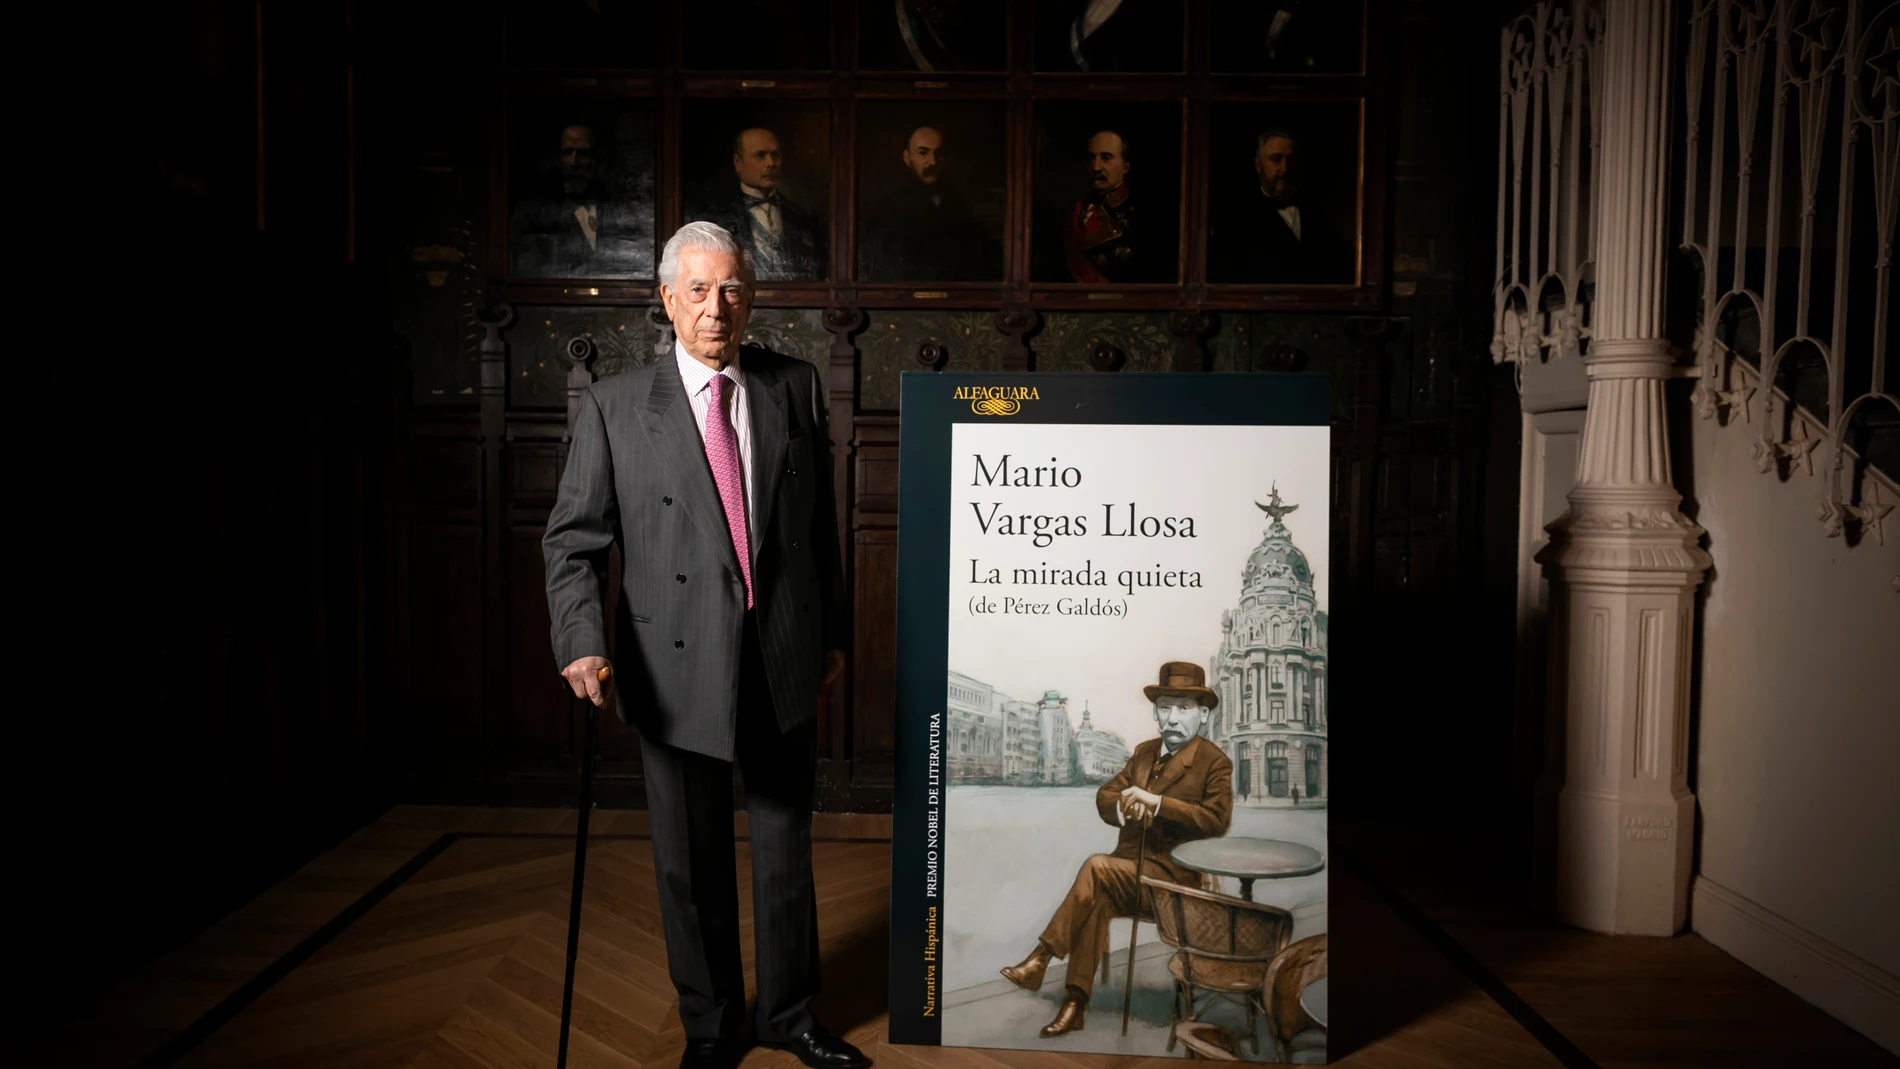 El escritor Mario Vargas Llosa durante la presentación de la "La mirada quieta" en el Ateneo de Madrid.